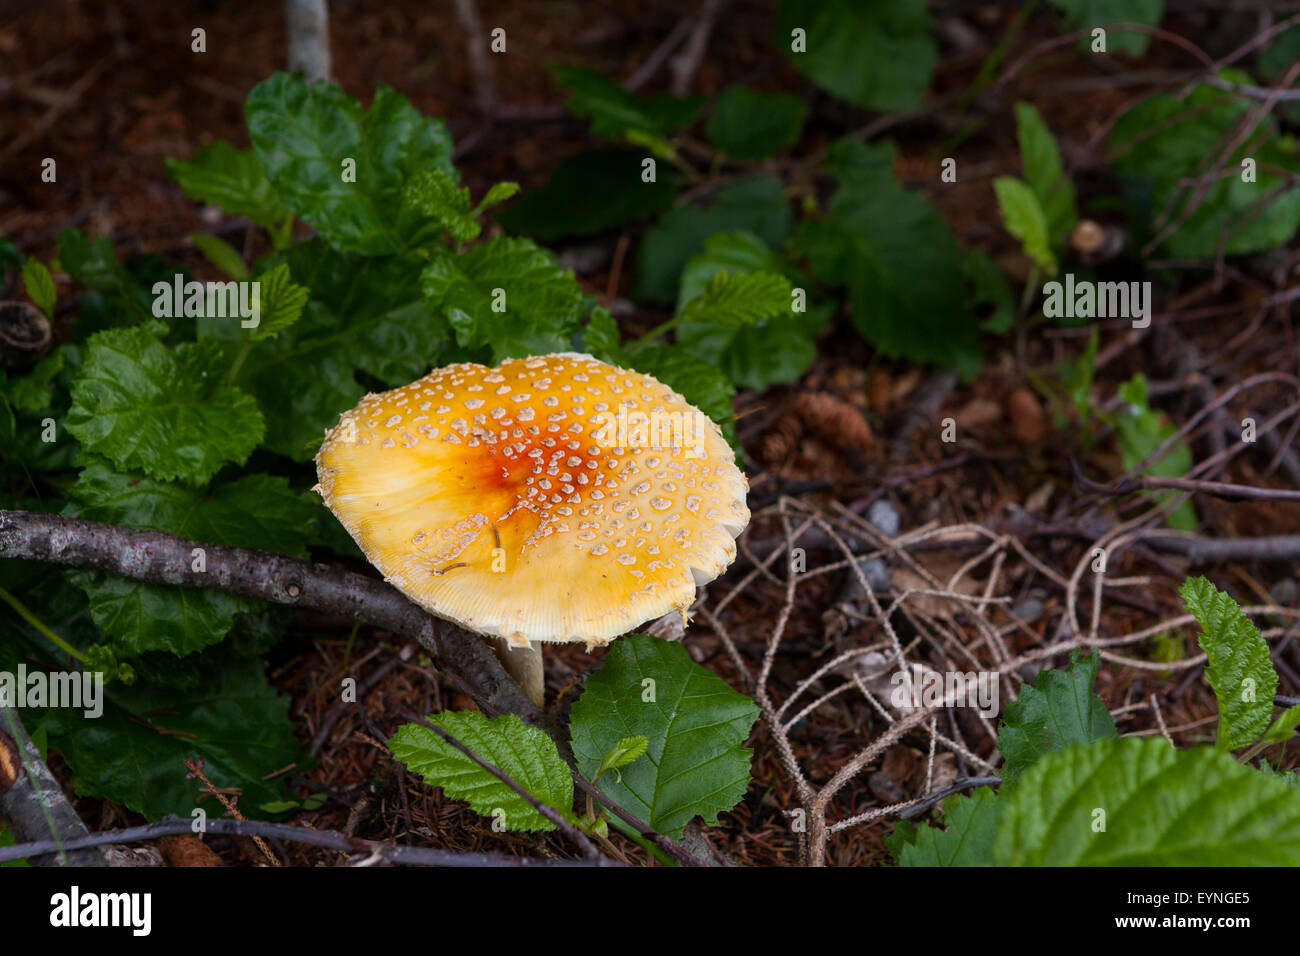 Amanita muscaria,fly agaric or fly amanita,mushroom,psychoactive basidiomycete fungus Stock Photo